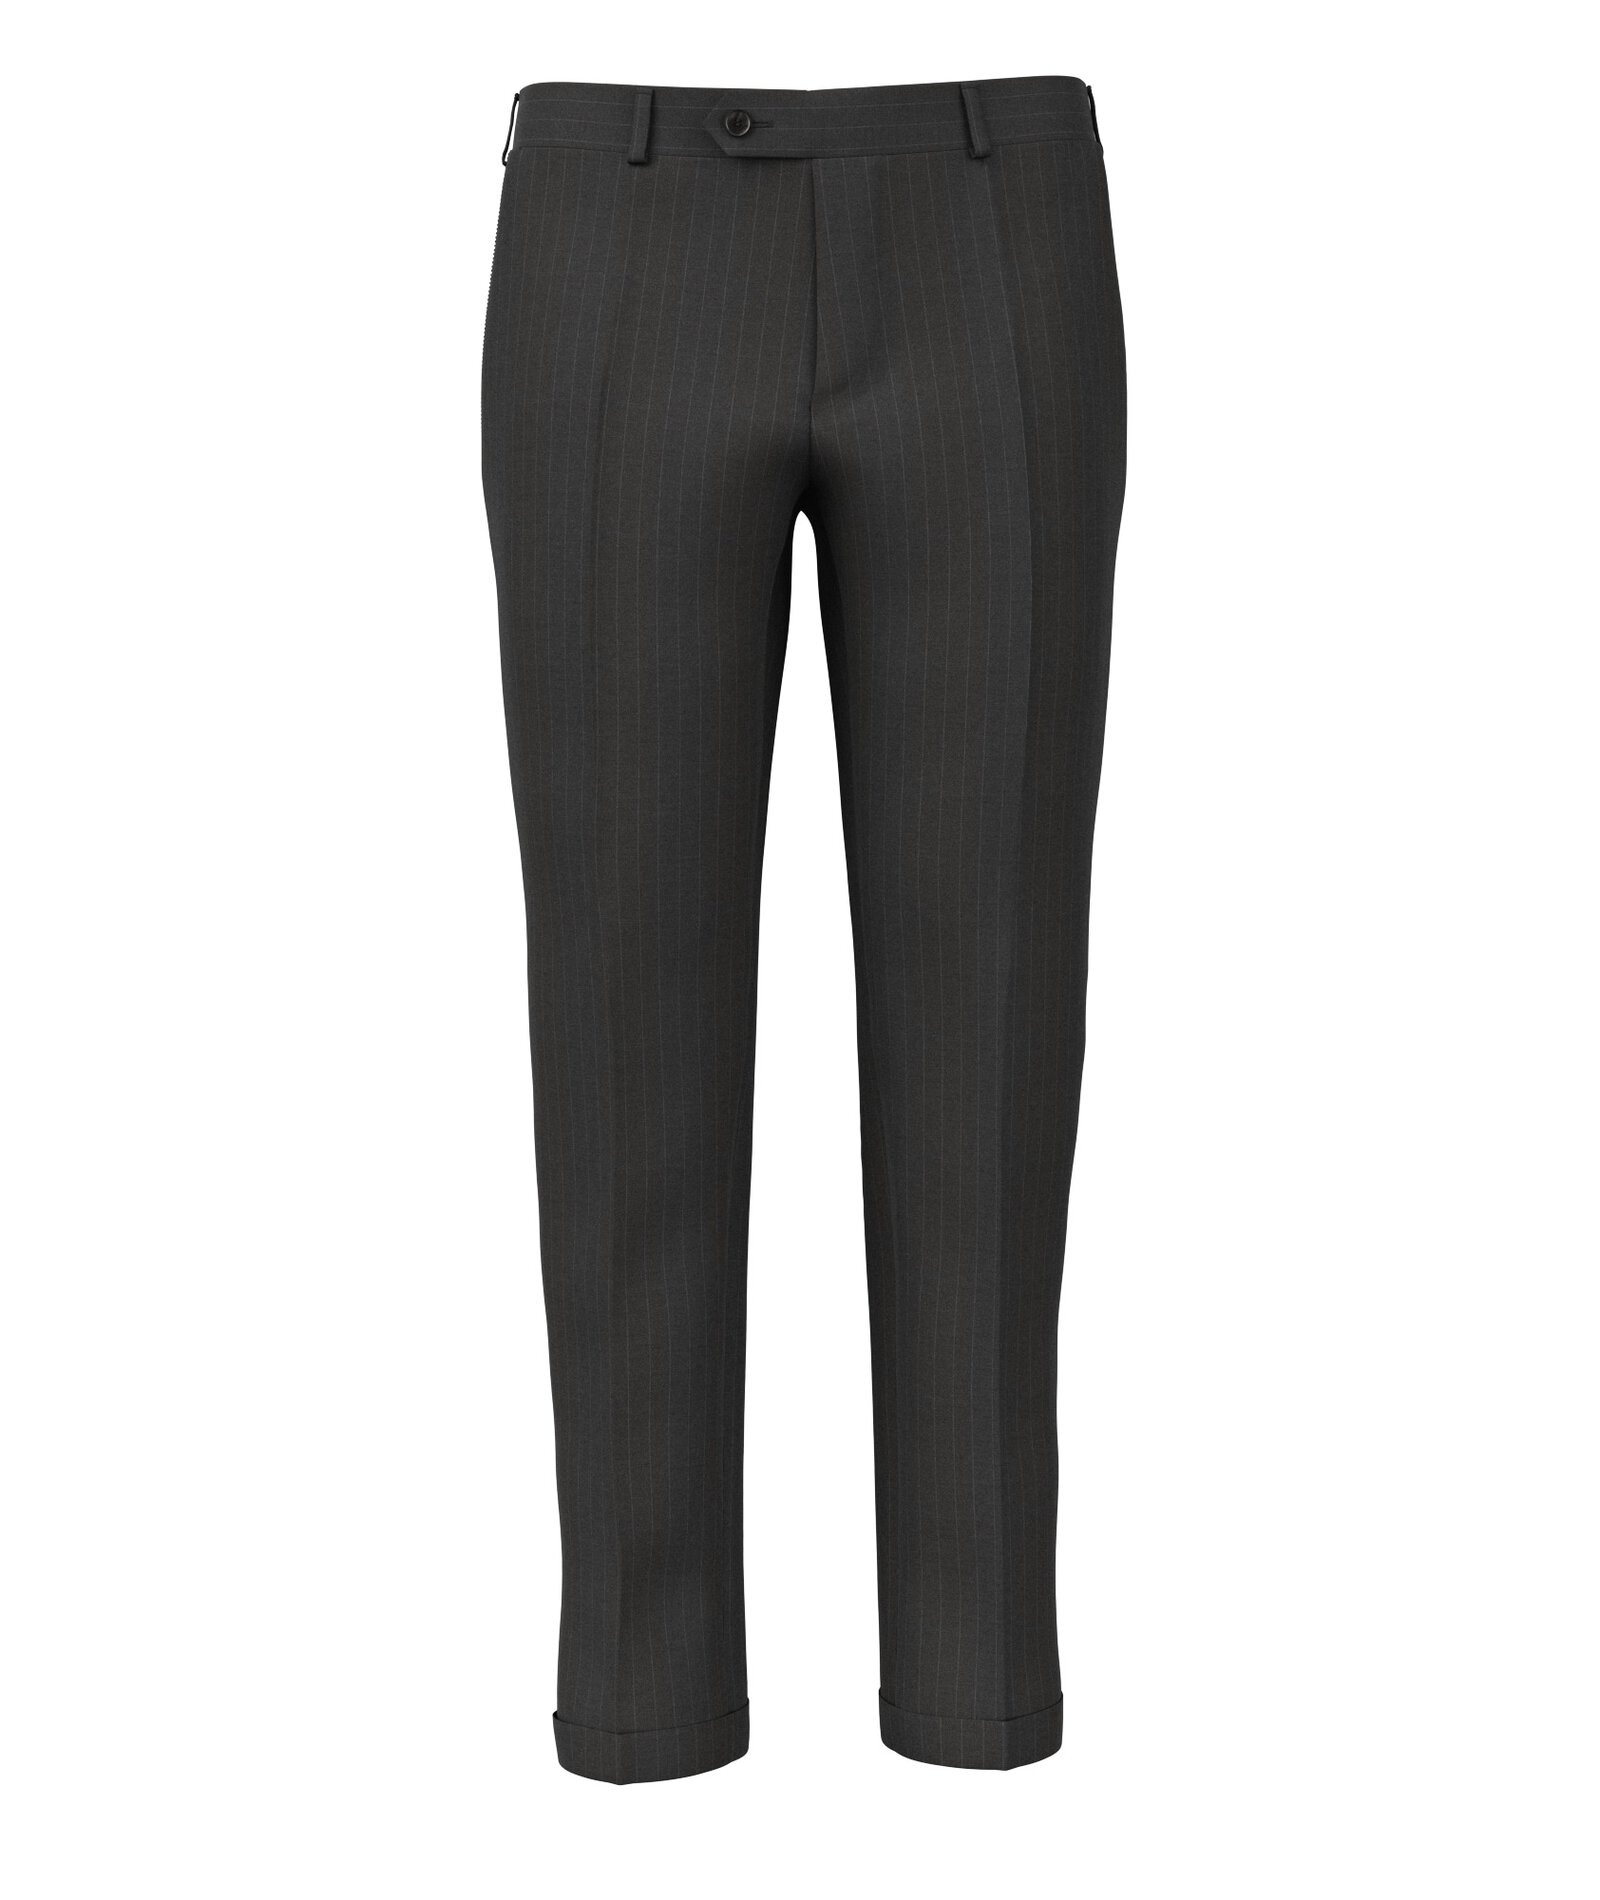 Image of Pantaloni da uomo su misura, Loro Piana, Grigio in Twill di Lana 150s, Quattro Stagioni | Lanieri